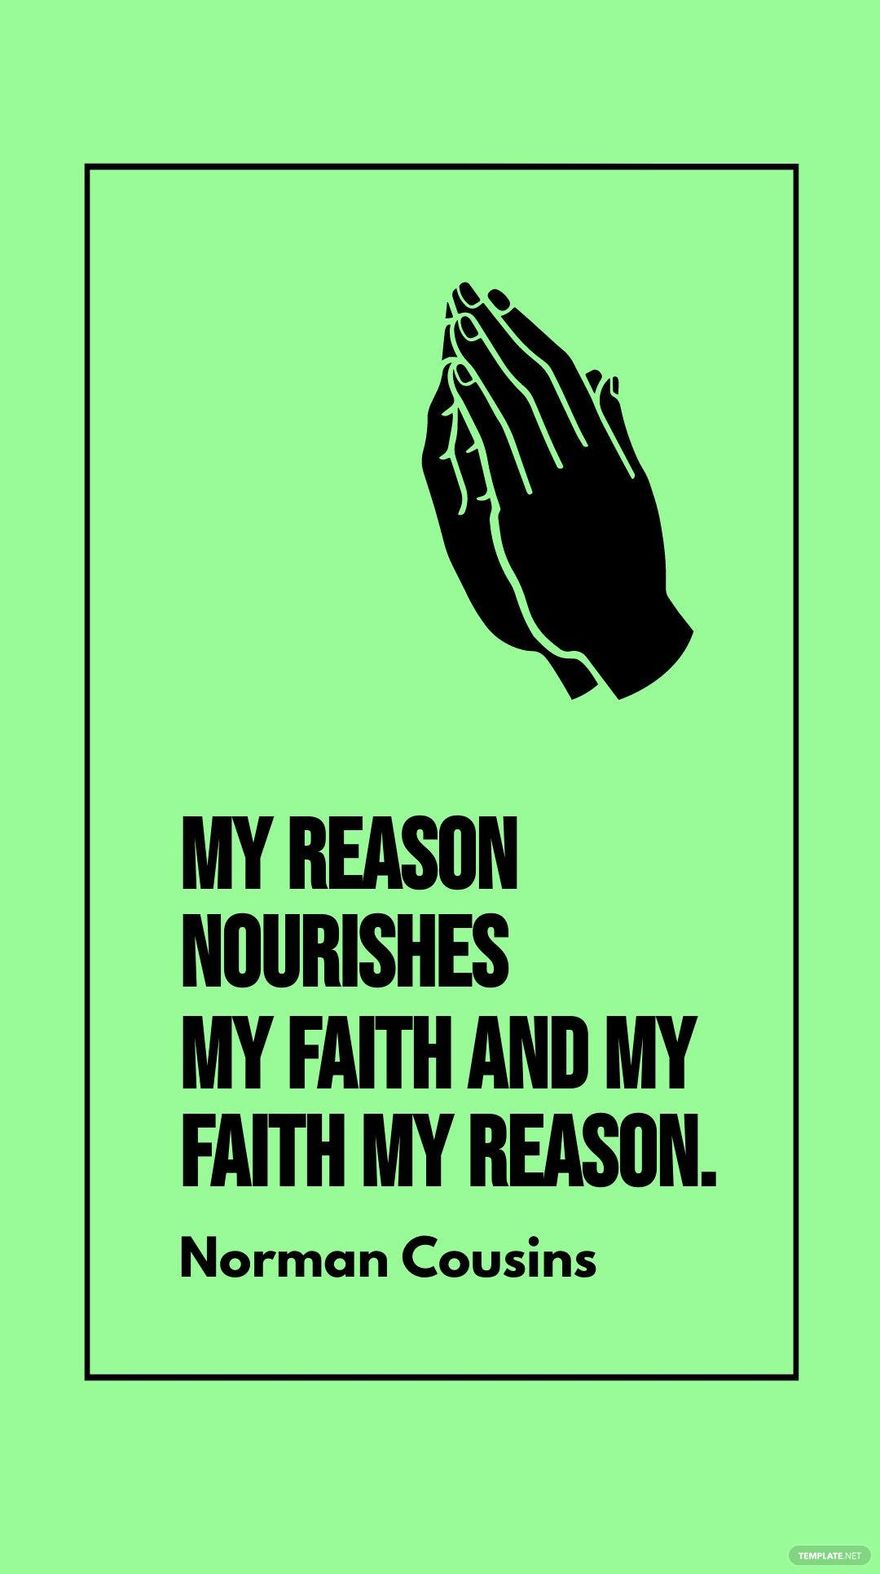 Norman Cousins - My reason nourishes my faith and my faith my reason.